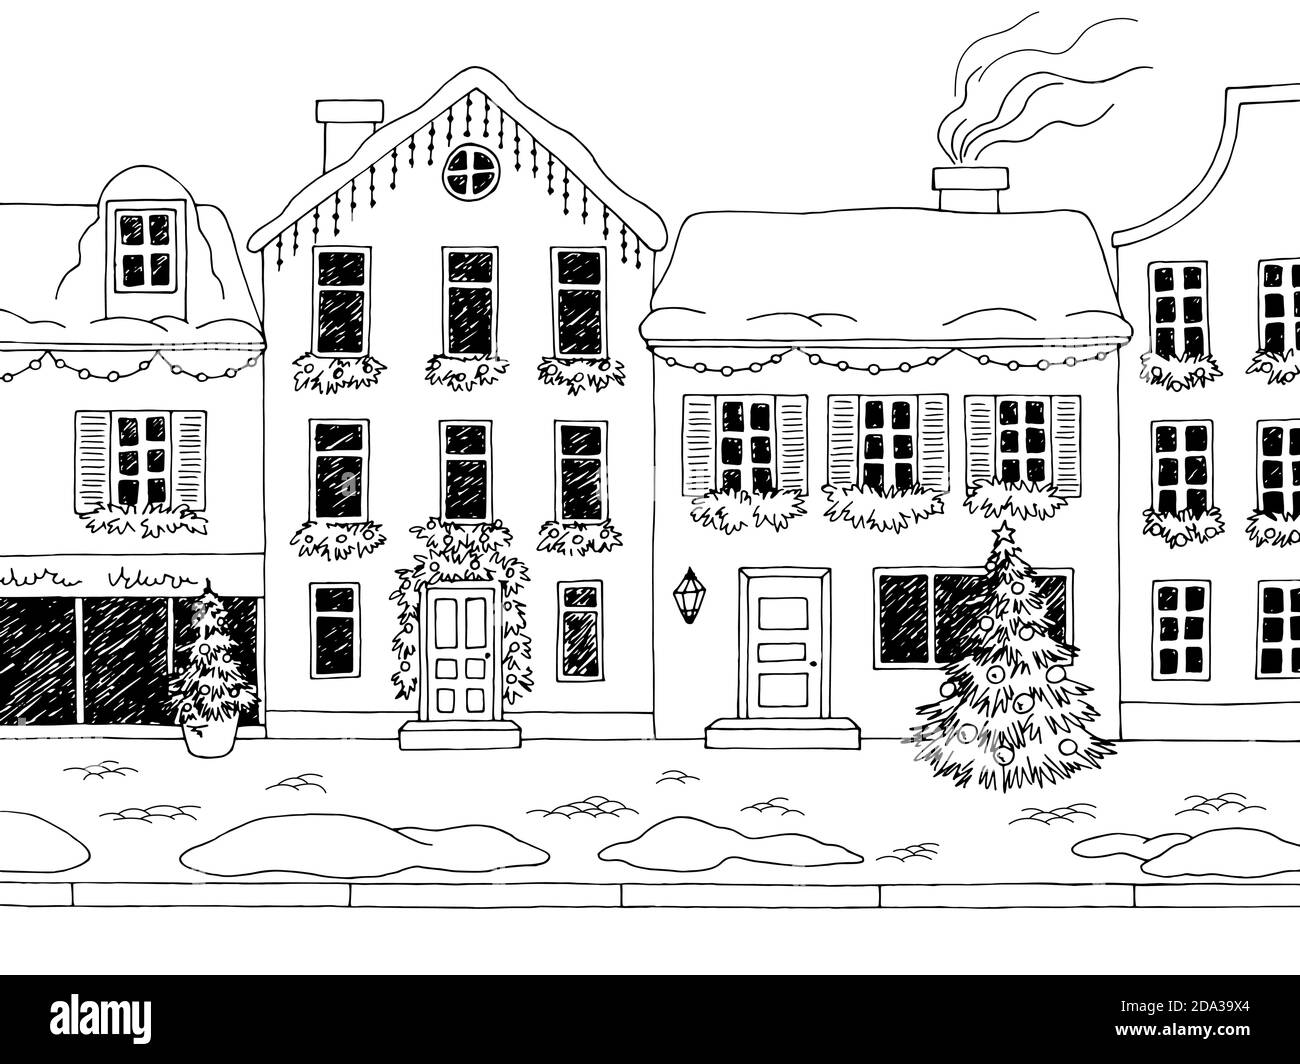 Weihnachten Straße Haus außen Winter Grafik schwarz weiß Landschaft Skizze Illustrationsvektor Stock Vektor